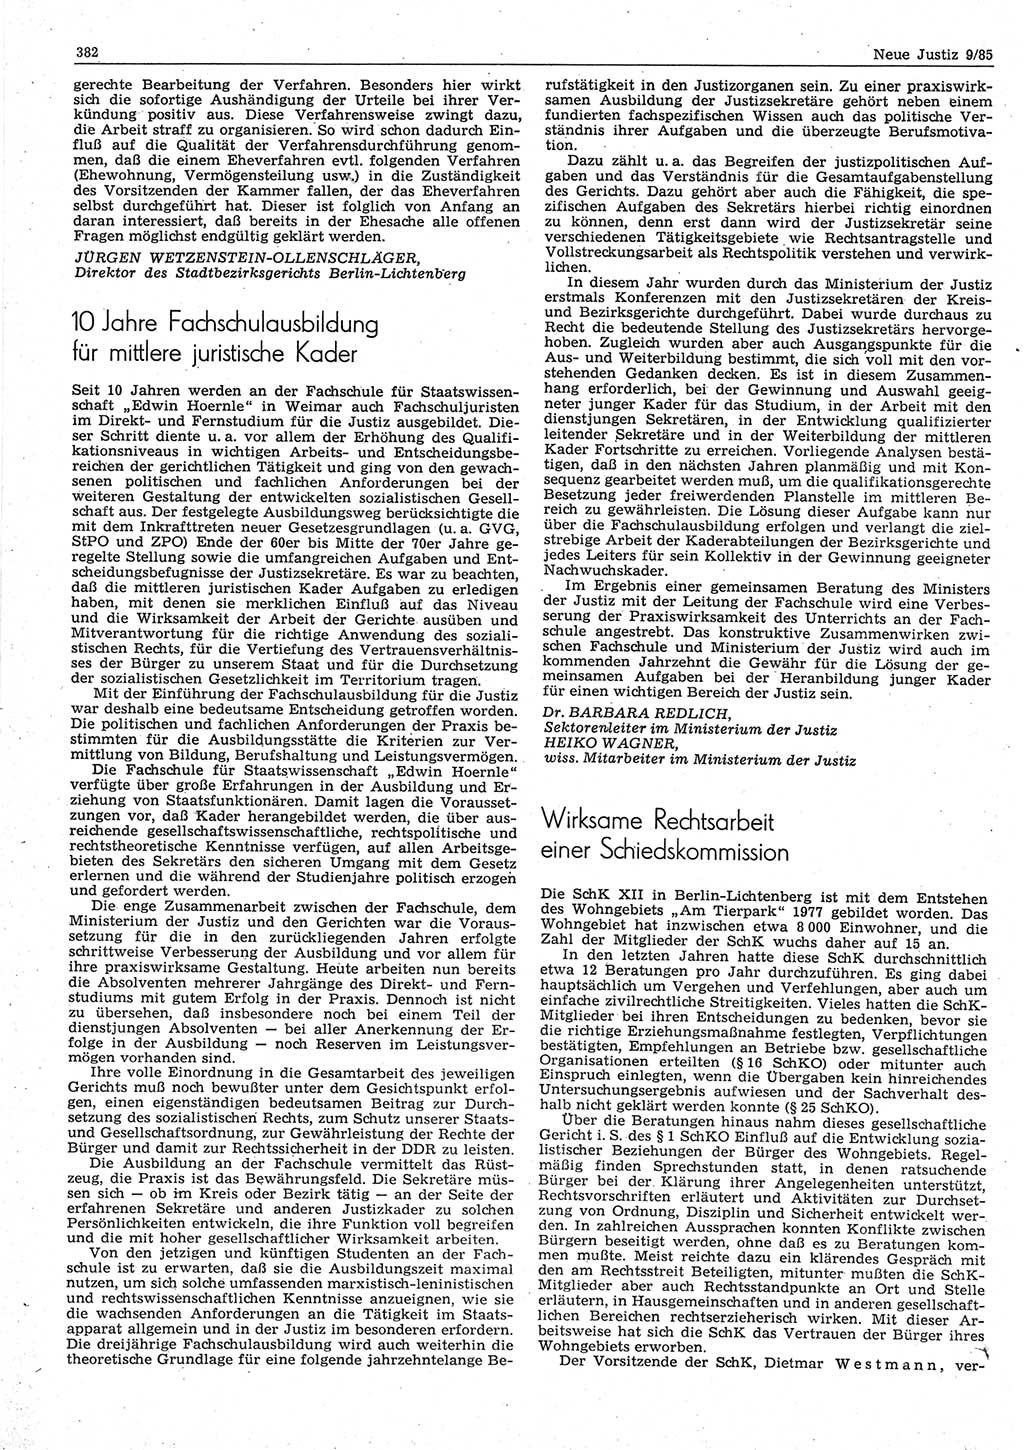 Neue Justiz (NJ), Zeitschrift für sozialistisches Recht und Gesetzlichkeit [Deutsche Demokratische Republik (DDR)], 39. Jahrgang 1985, Seite 382 (NJ DDR 1985, S. 382)